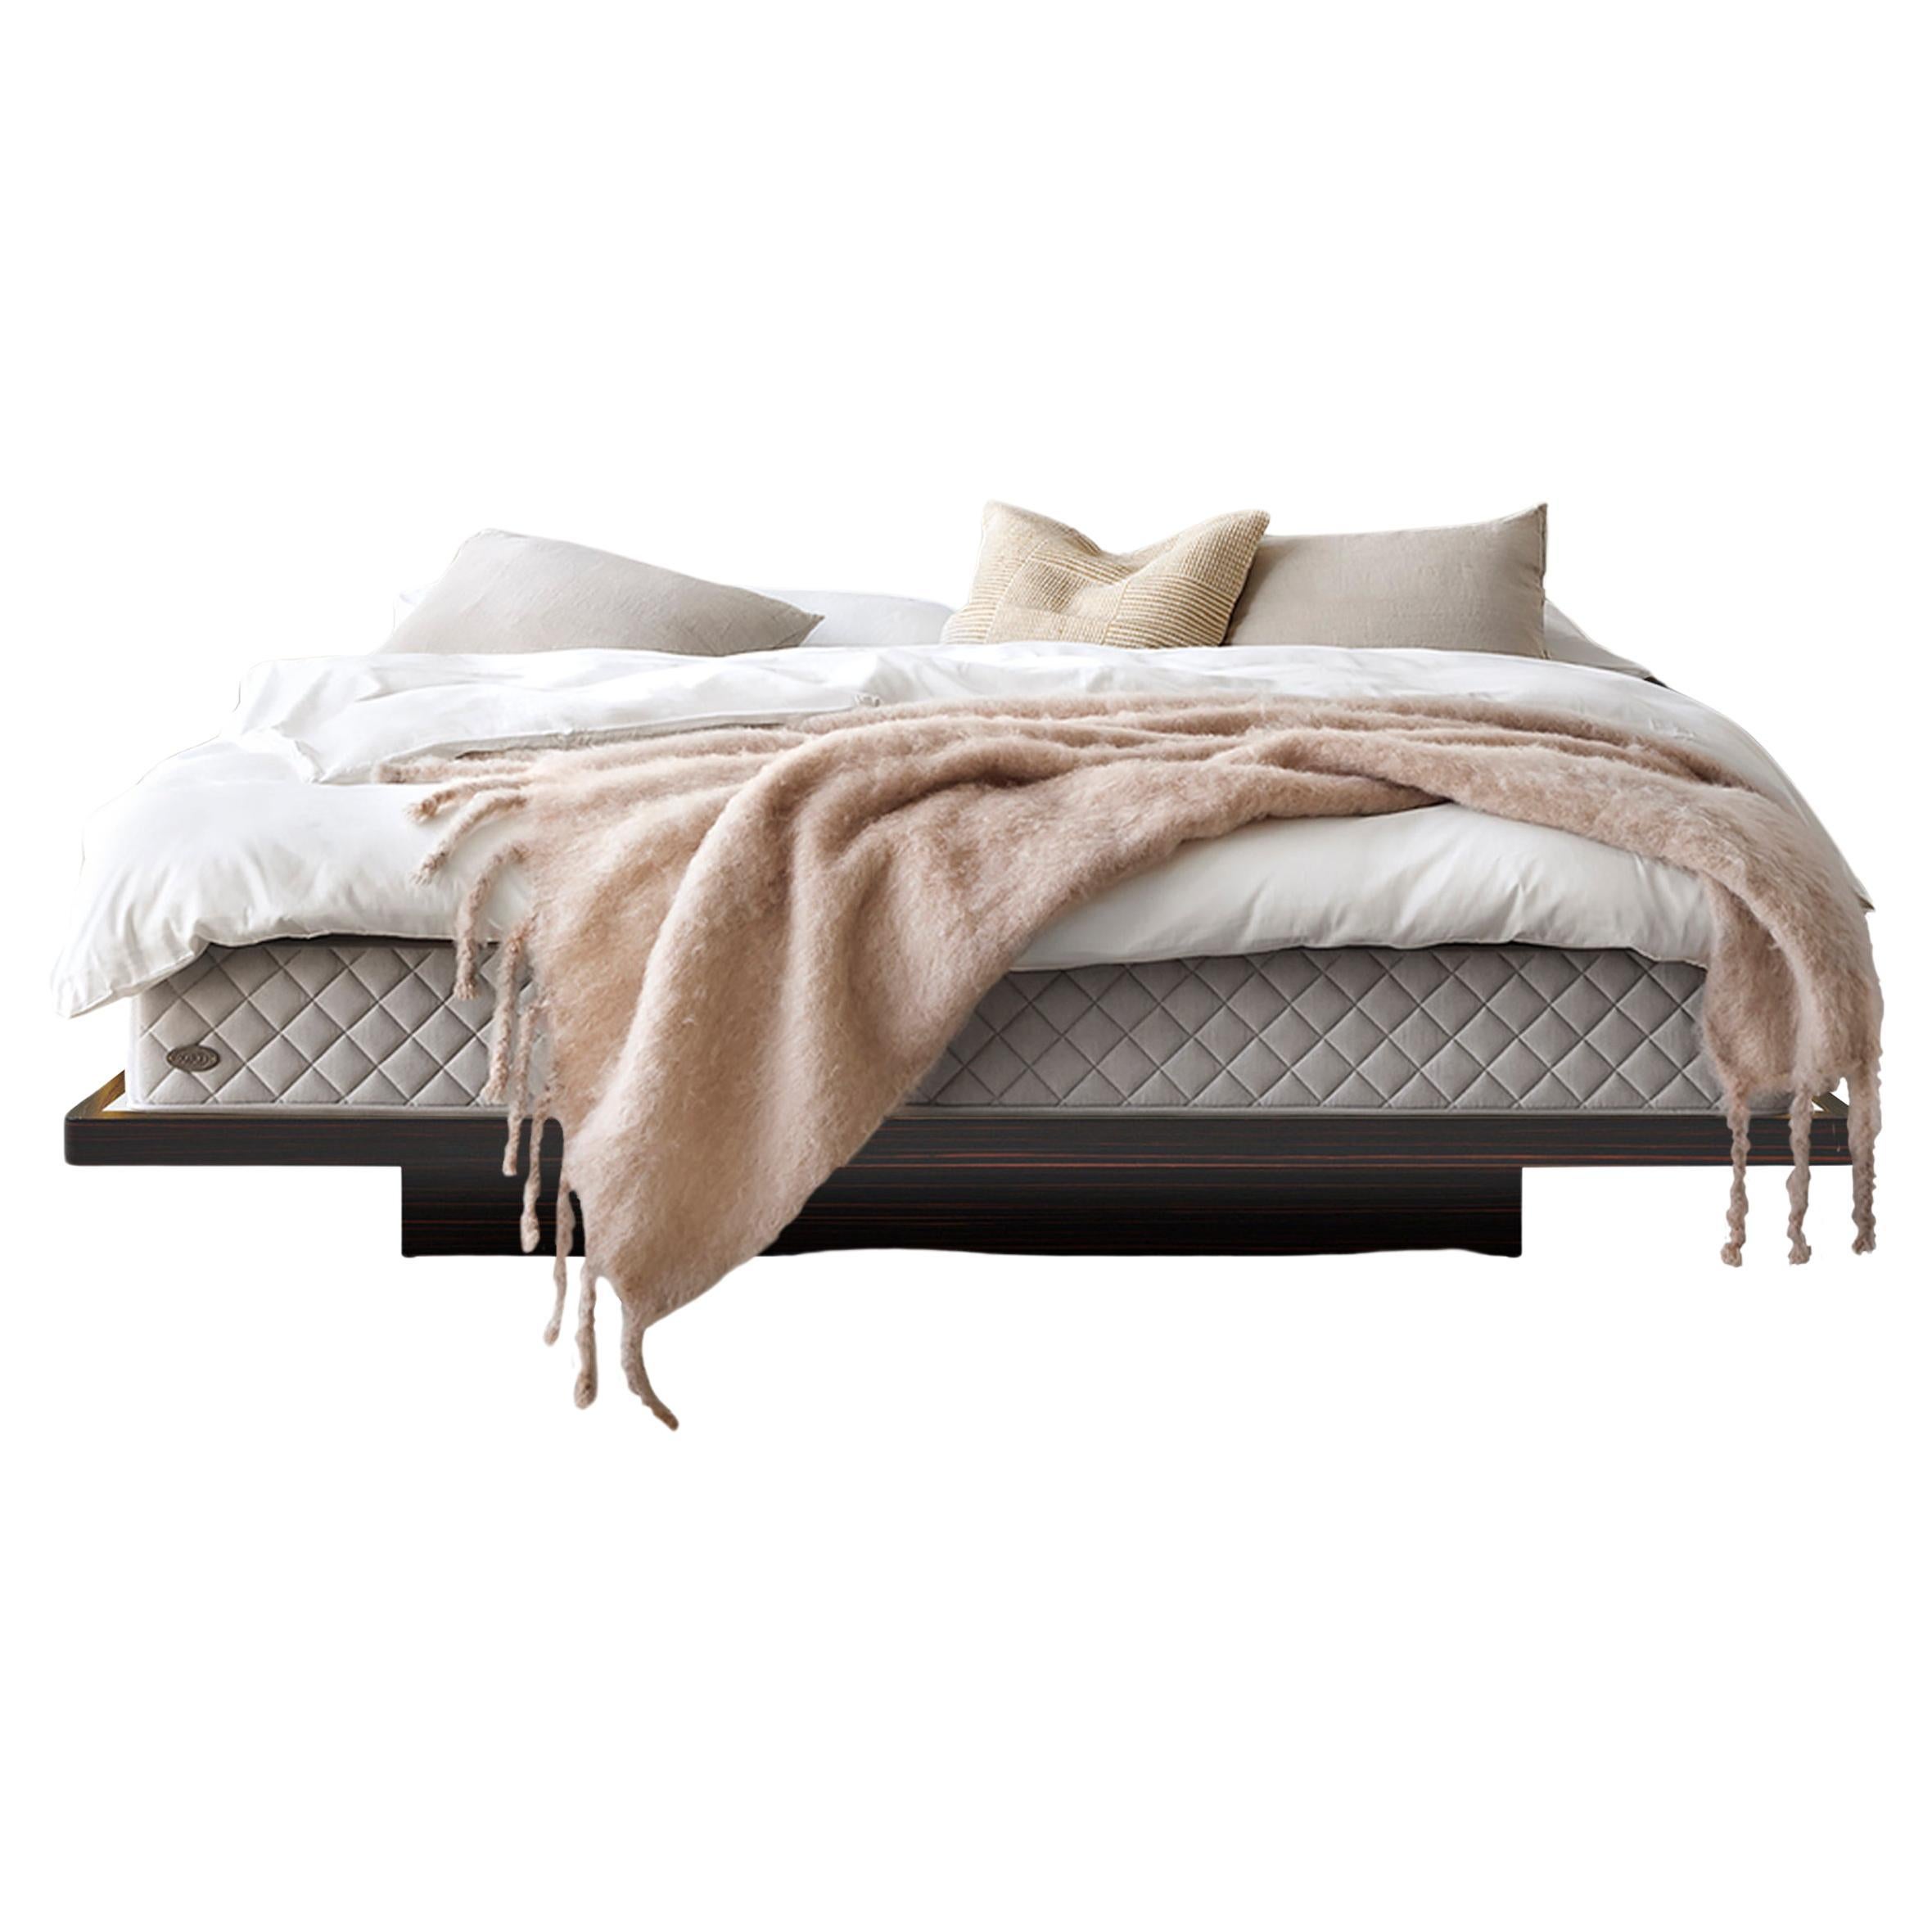 Essex-Bett, Leder-, Holz- und Spiegelbett mit optionaler Nachttischleuchte (King)